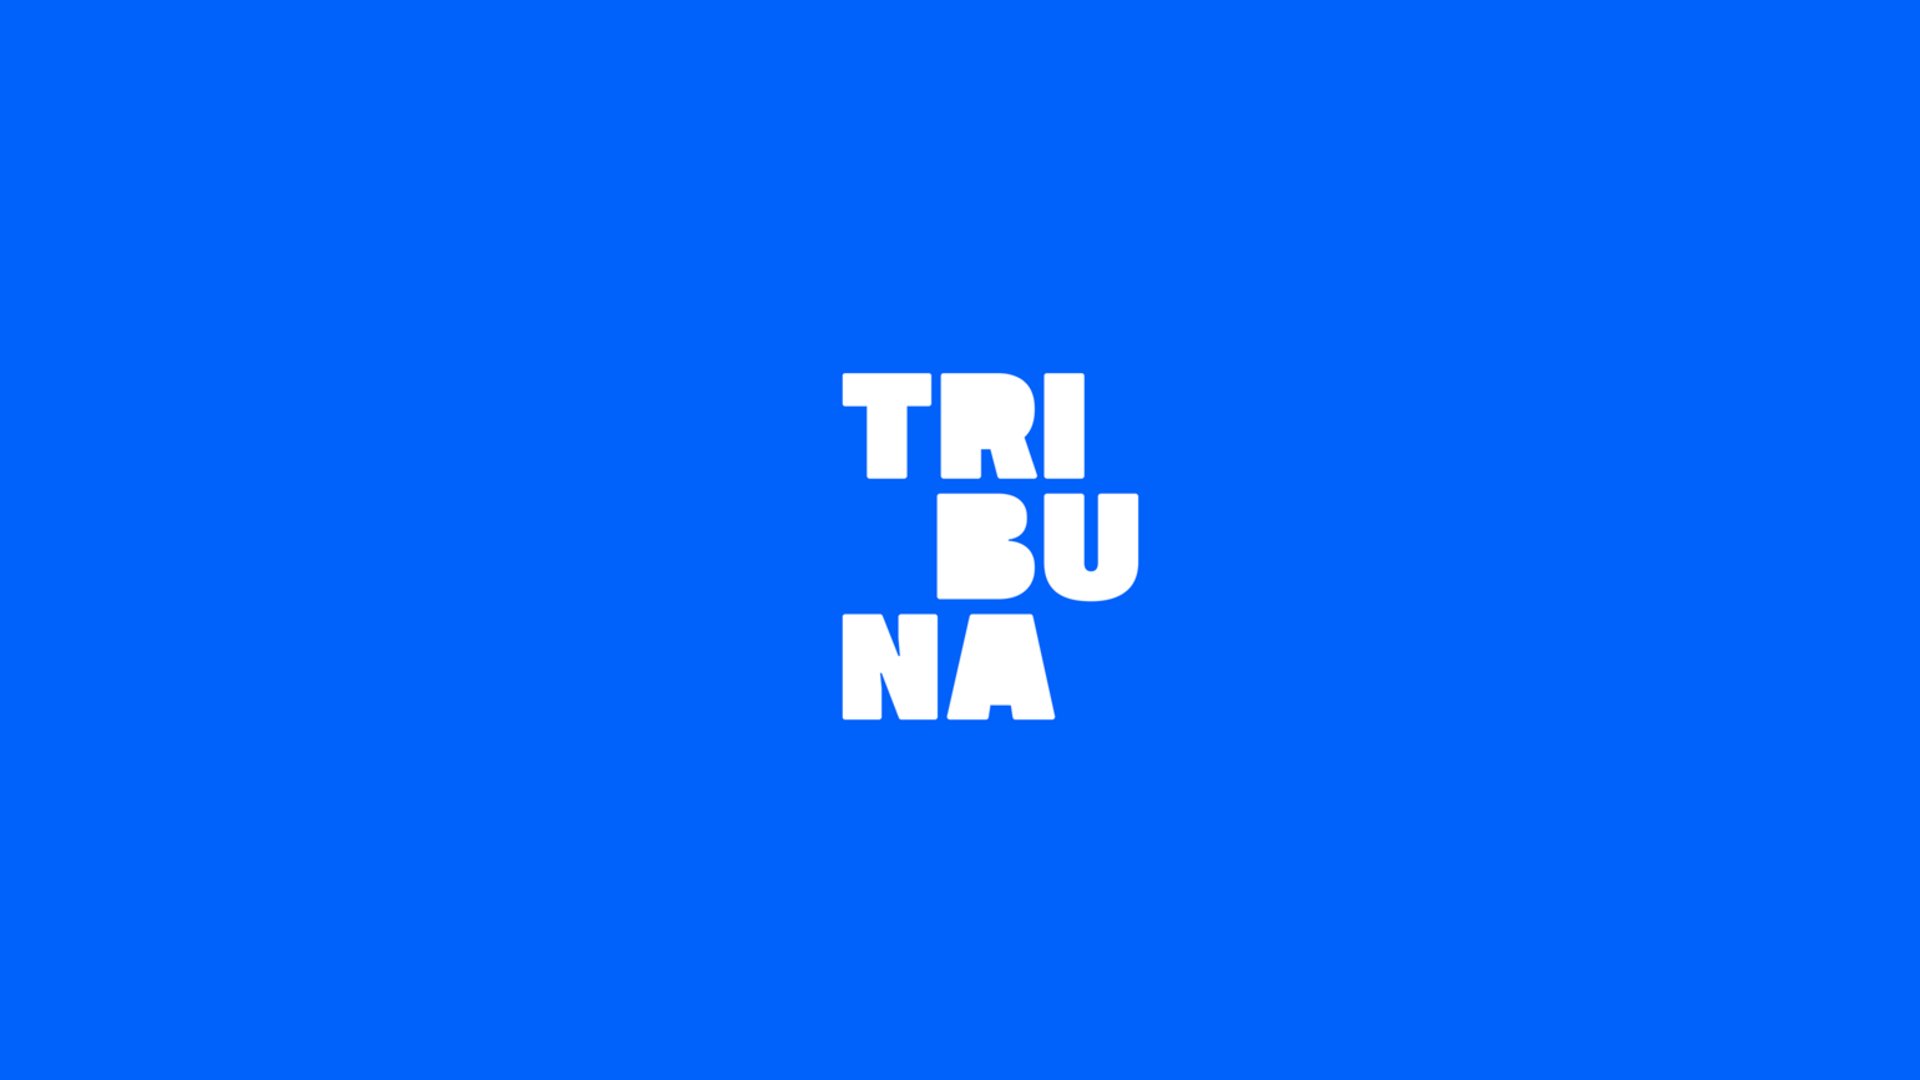 Fred Burlamaqui fala sobre “Marketing pessoal para a busca de emprego” – Tribuna